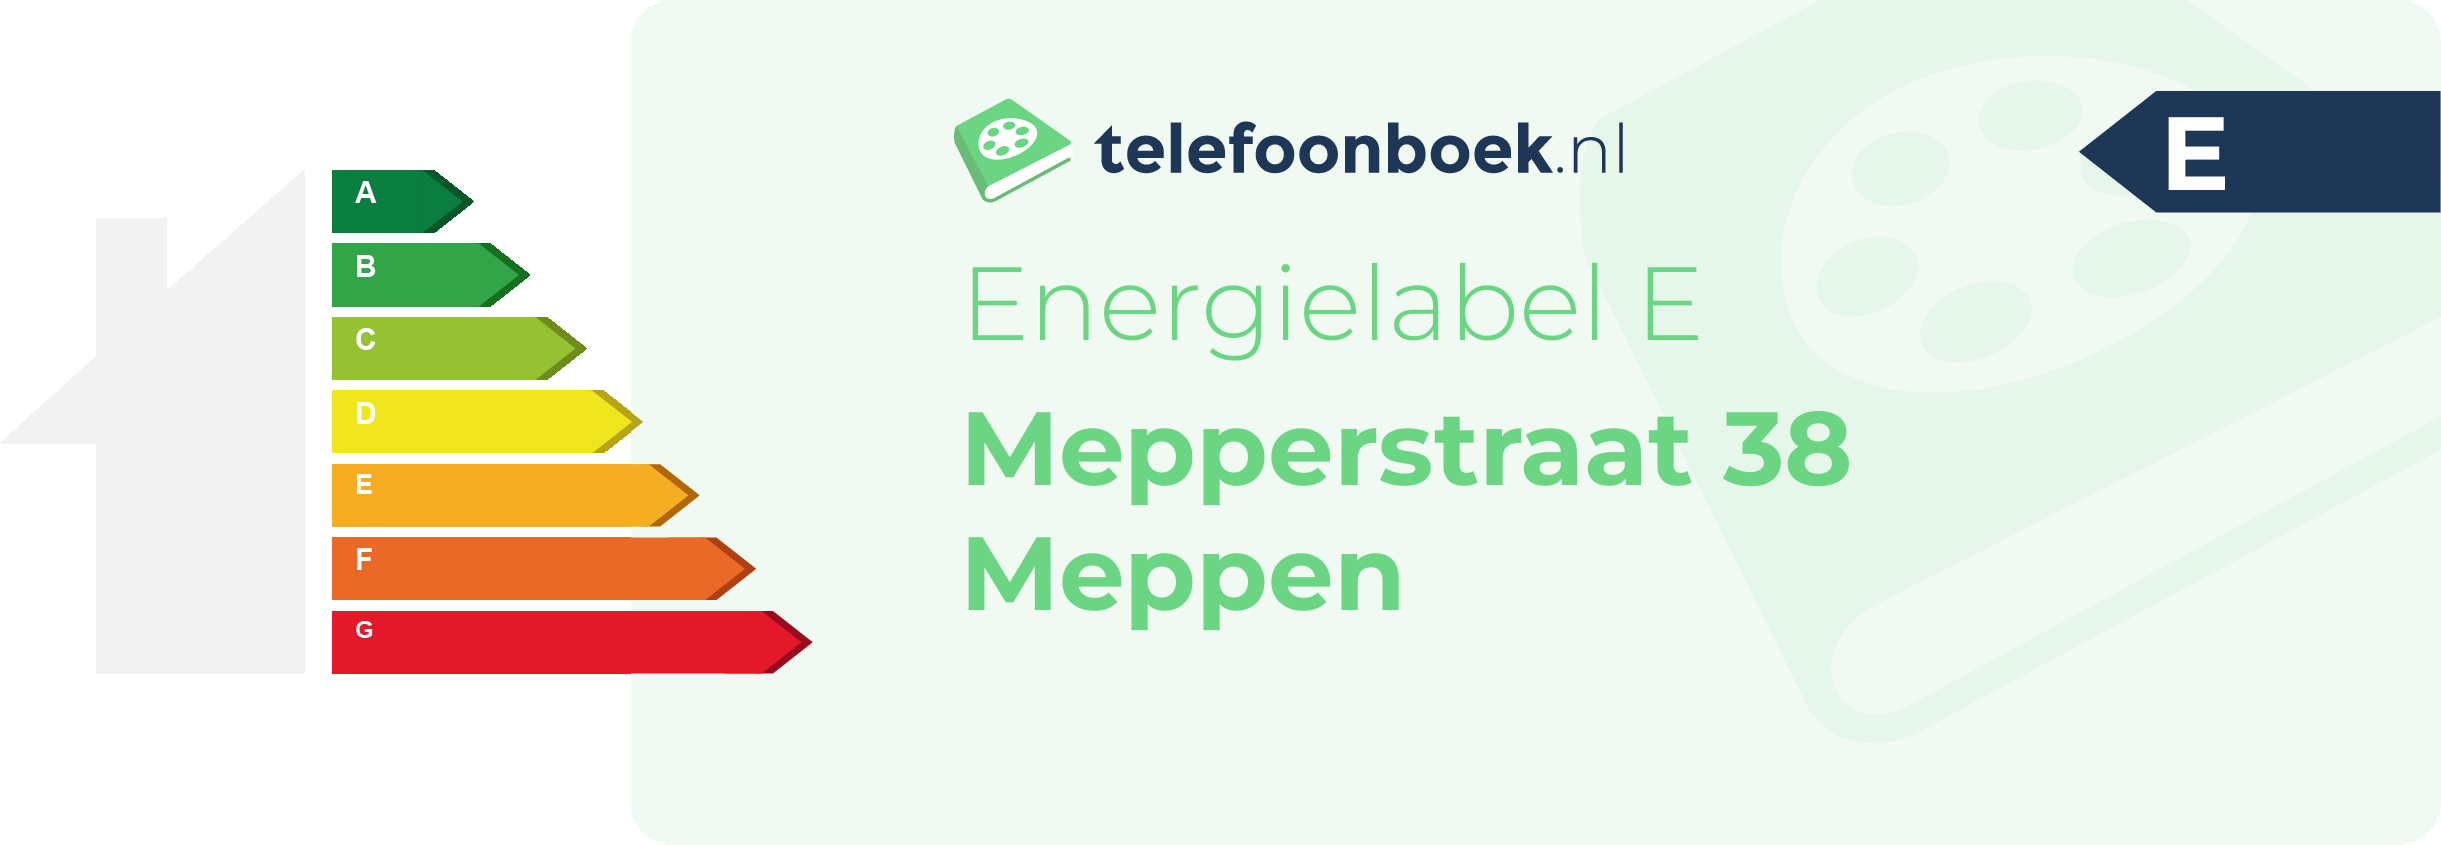 Energielabel Mepperstraat 38 Meppen